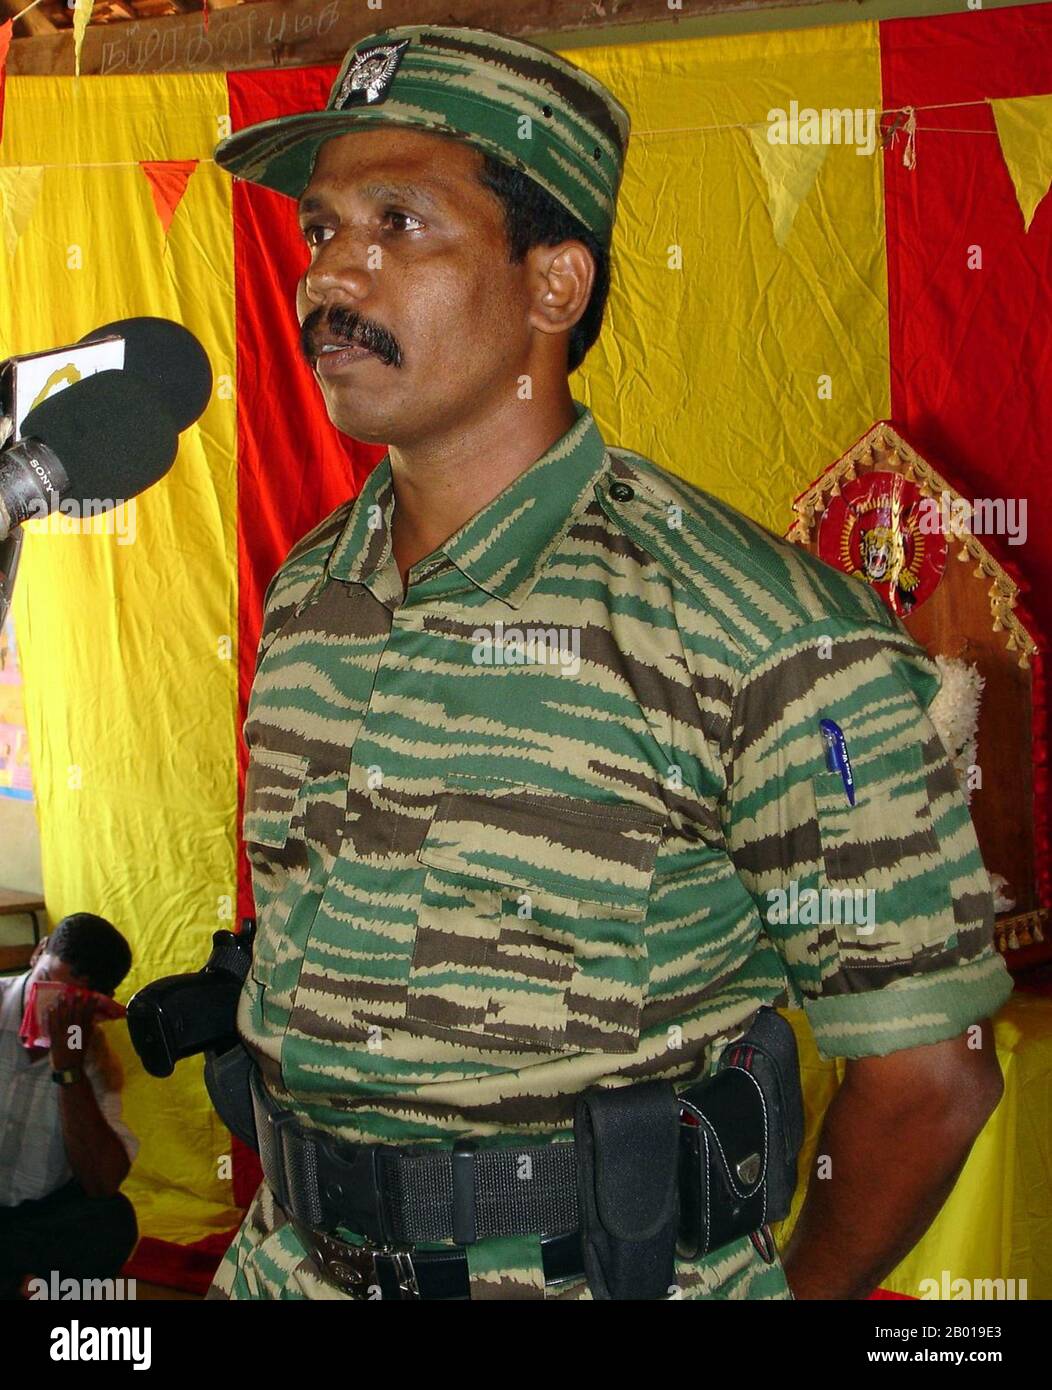 Sri Lanka : le commandant principal des LTTE cadre, le colonel Ramesh, s'adressant à un rassemblement de Tigres tamouls, c. 2008. Le colonel Ramesh était le commandant des LTTE pour les districts de Batticaloa et d'Ampara durant l'ère du cessez-le-feu de 2002. On pense qu'il a été tué en mai 2009 au cours de la dernière phase de la guerre civile au Sri Lanka. Banque D'Images